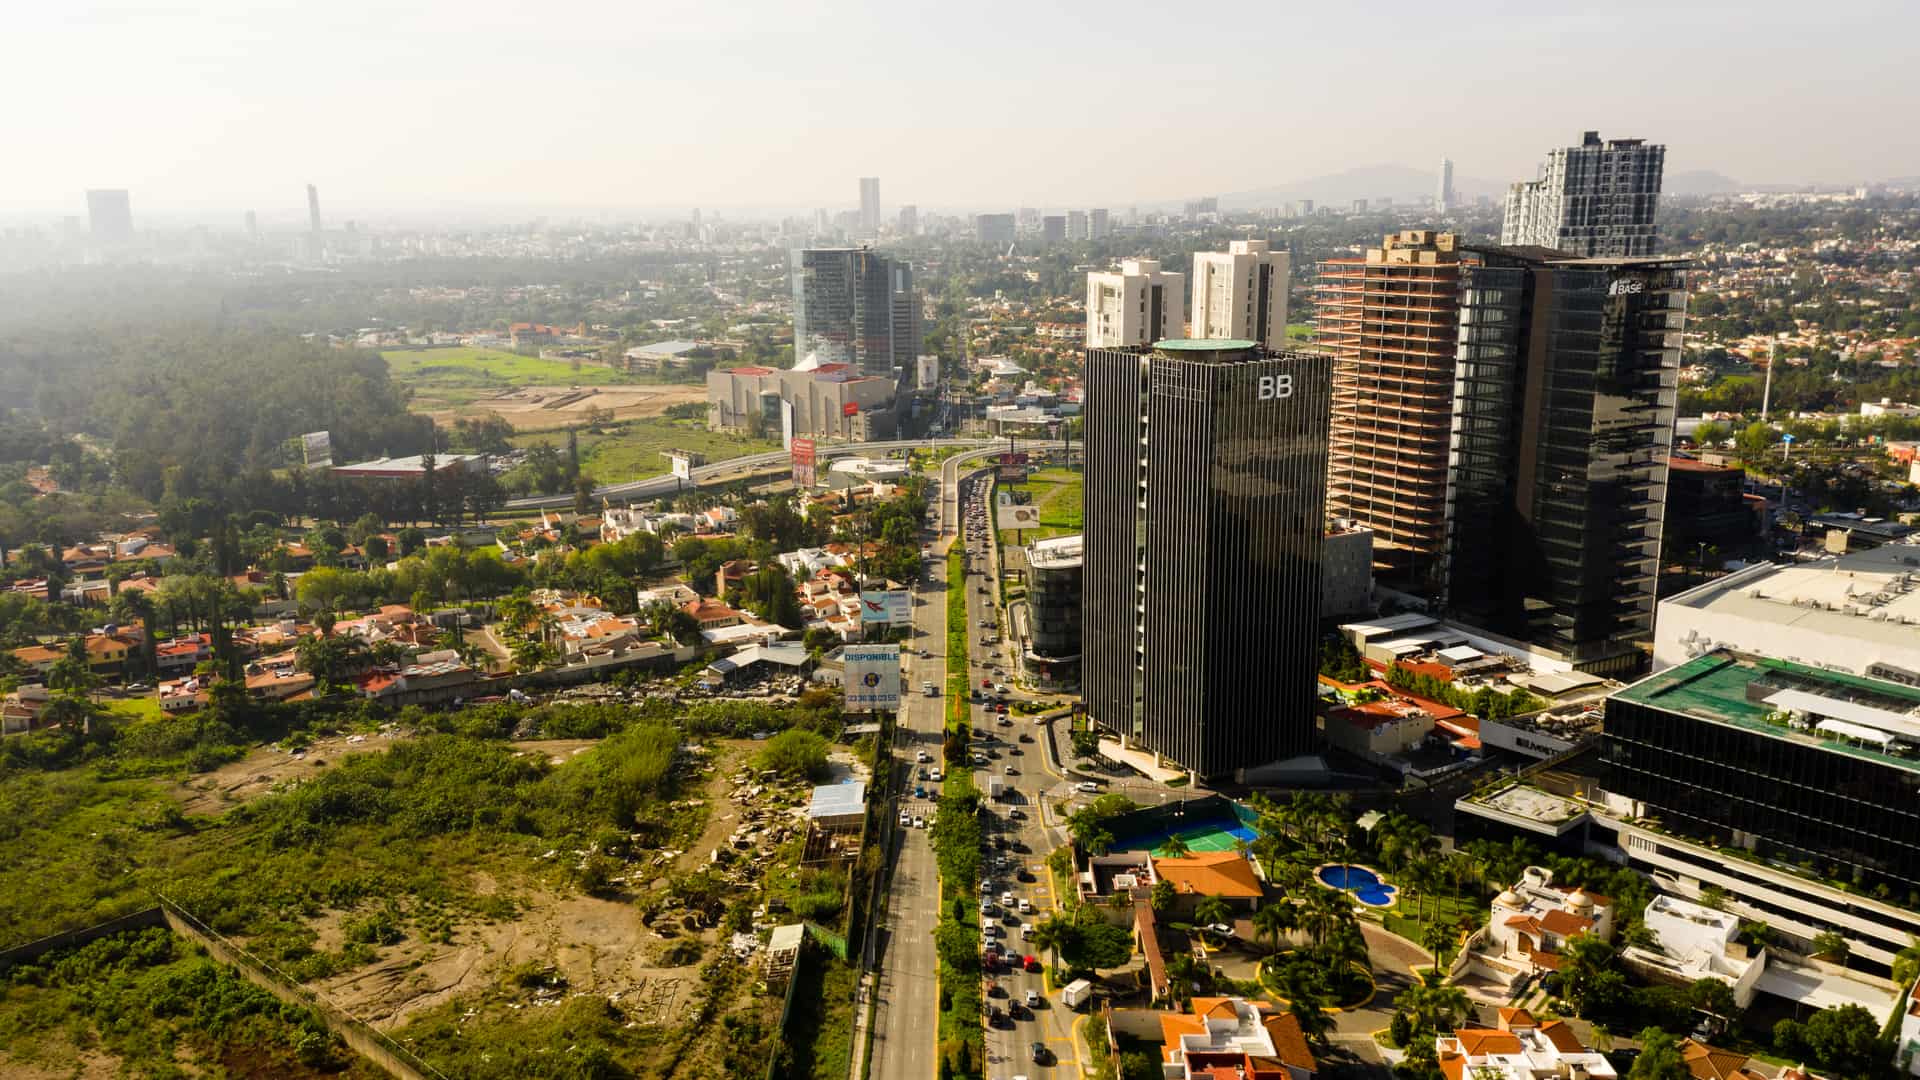 vista aerea de edificios de la ciudad de zapopan una localidad con internet de mexico